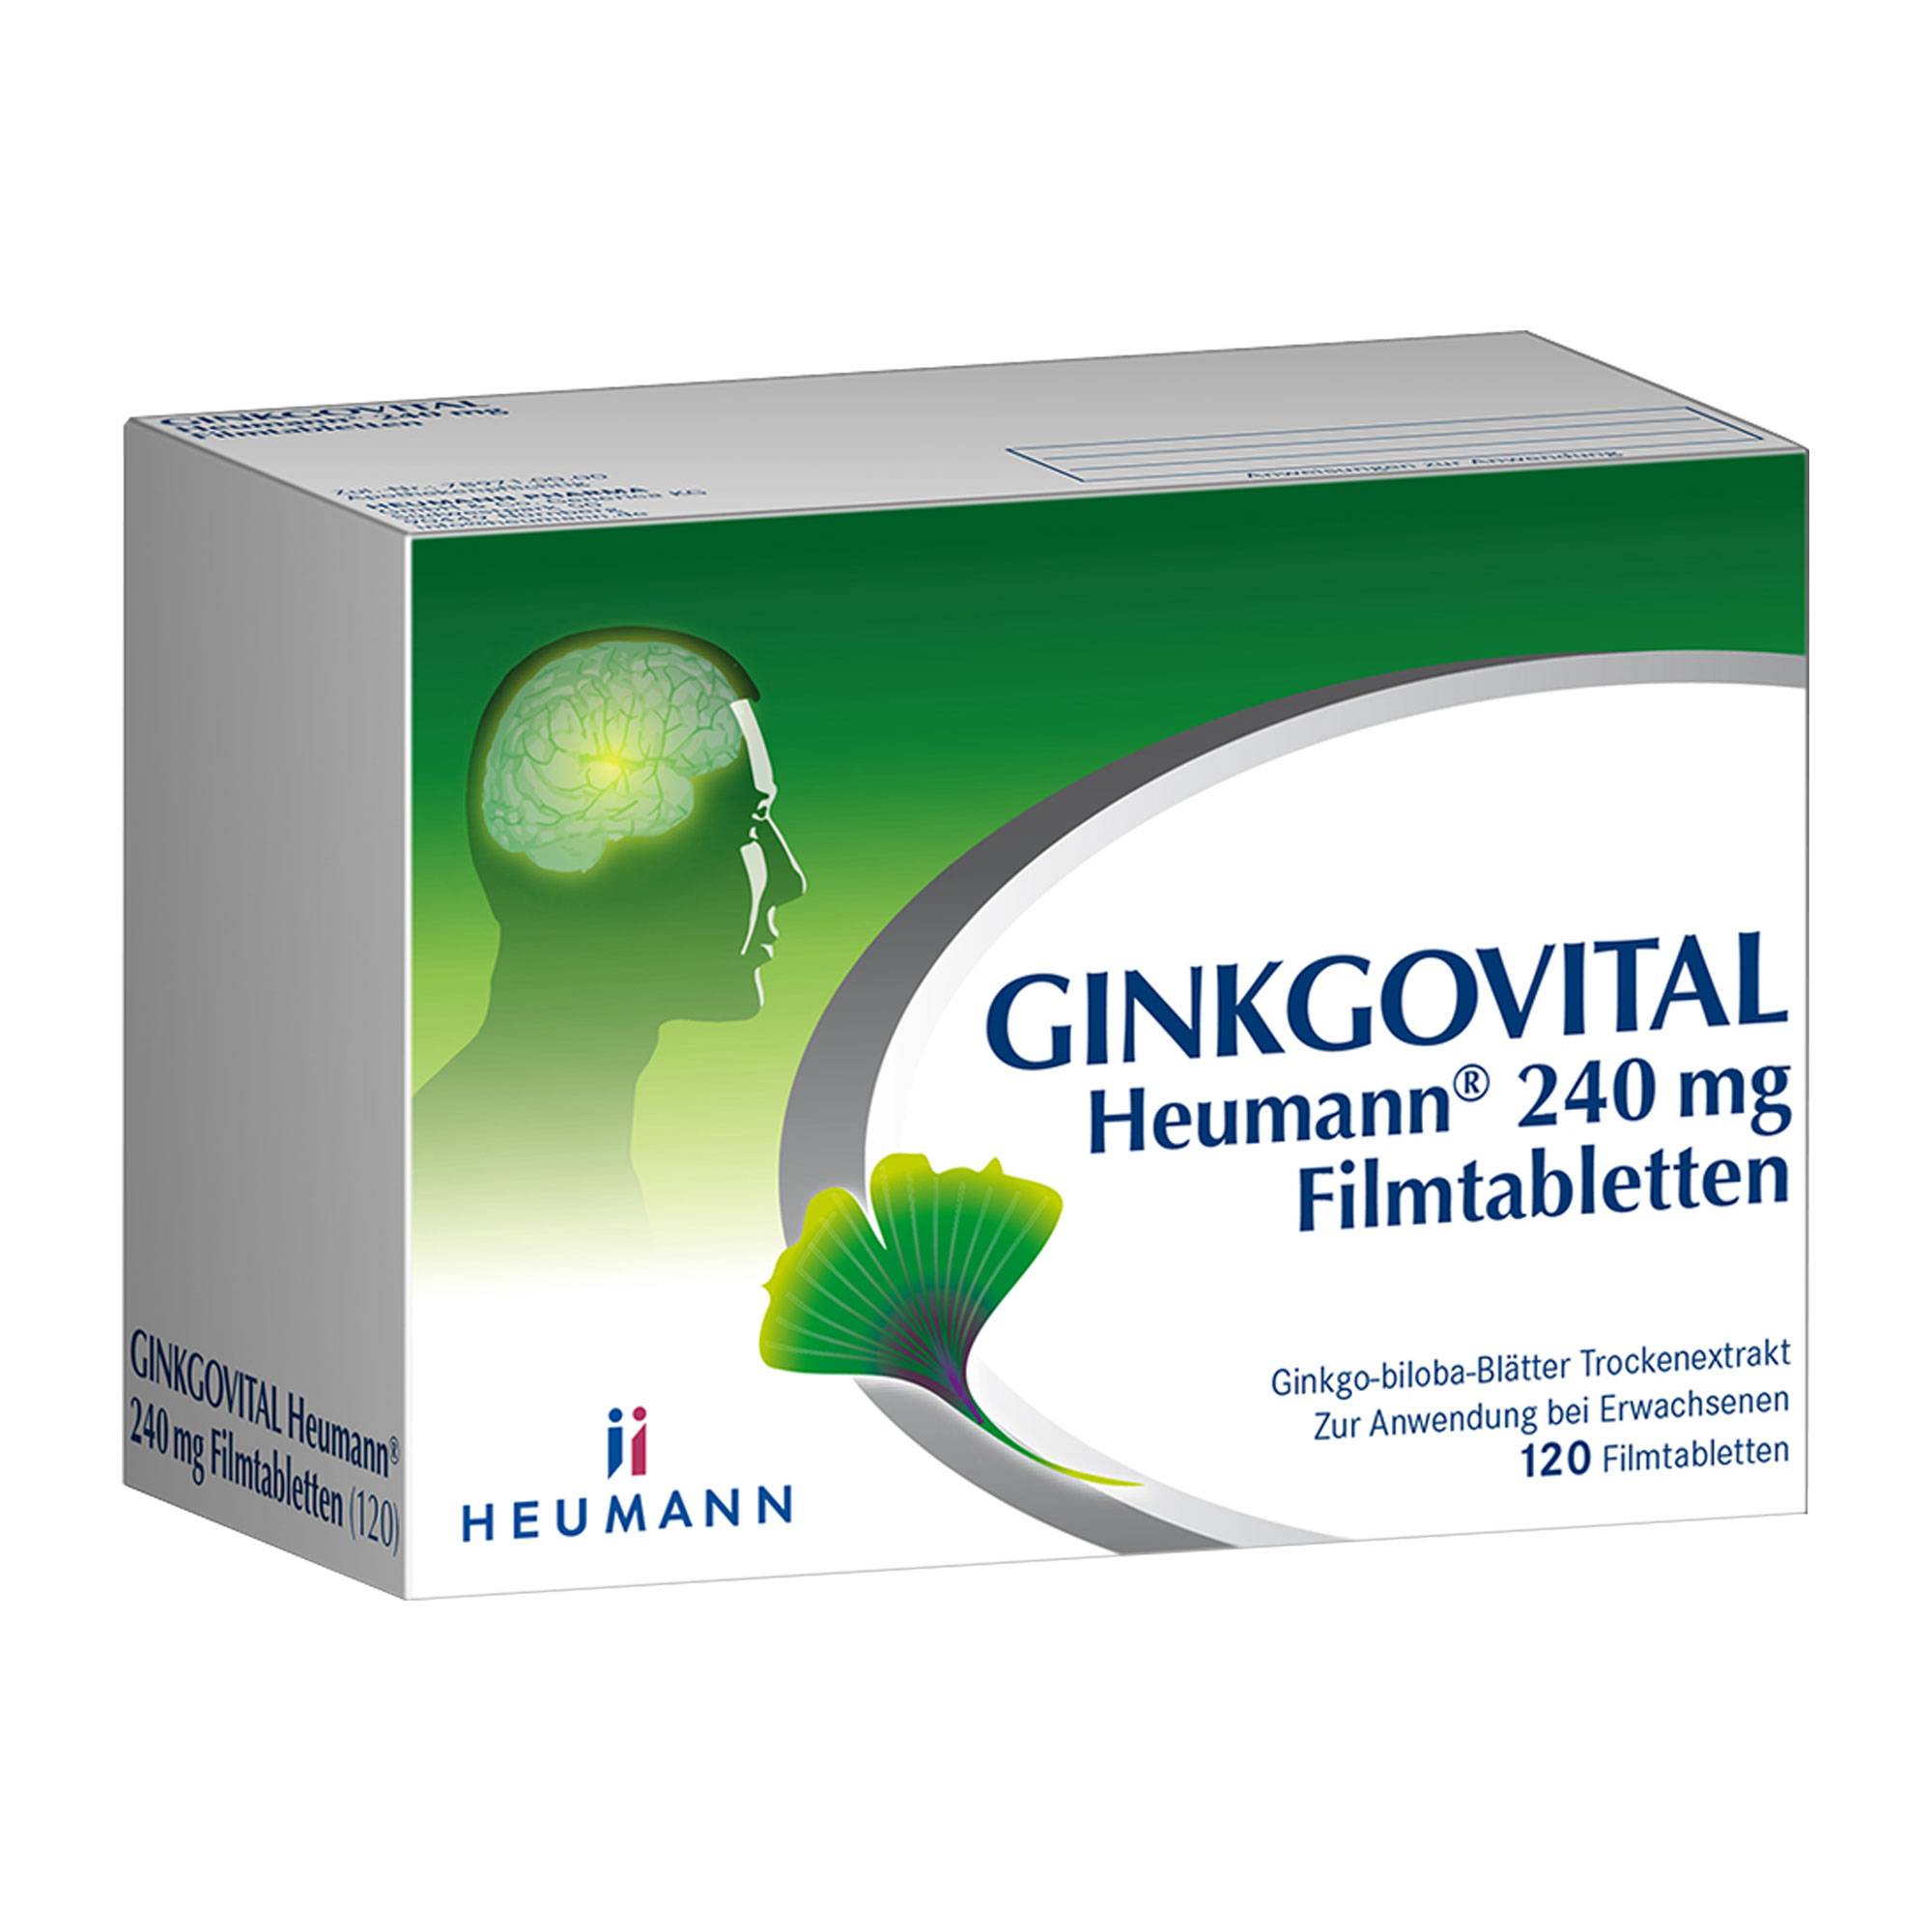 Pflanzliches Arzneimittel mit 240 mg Ginkgo-biloba-Blätter Trockenextrakt. Stärkt Gedächtnis und Konzentration.